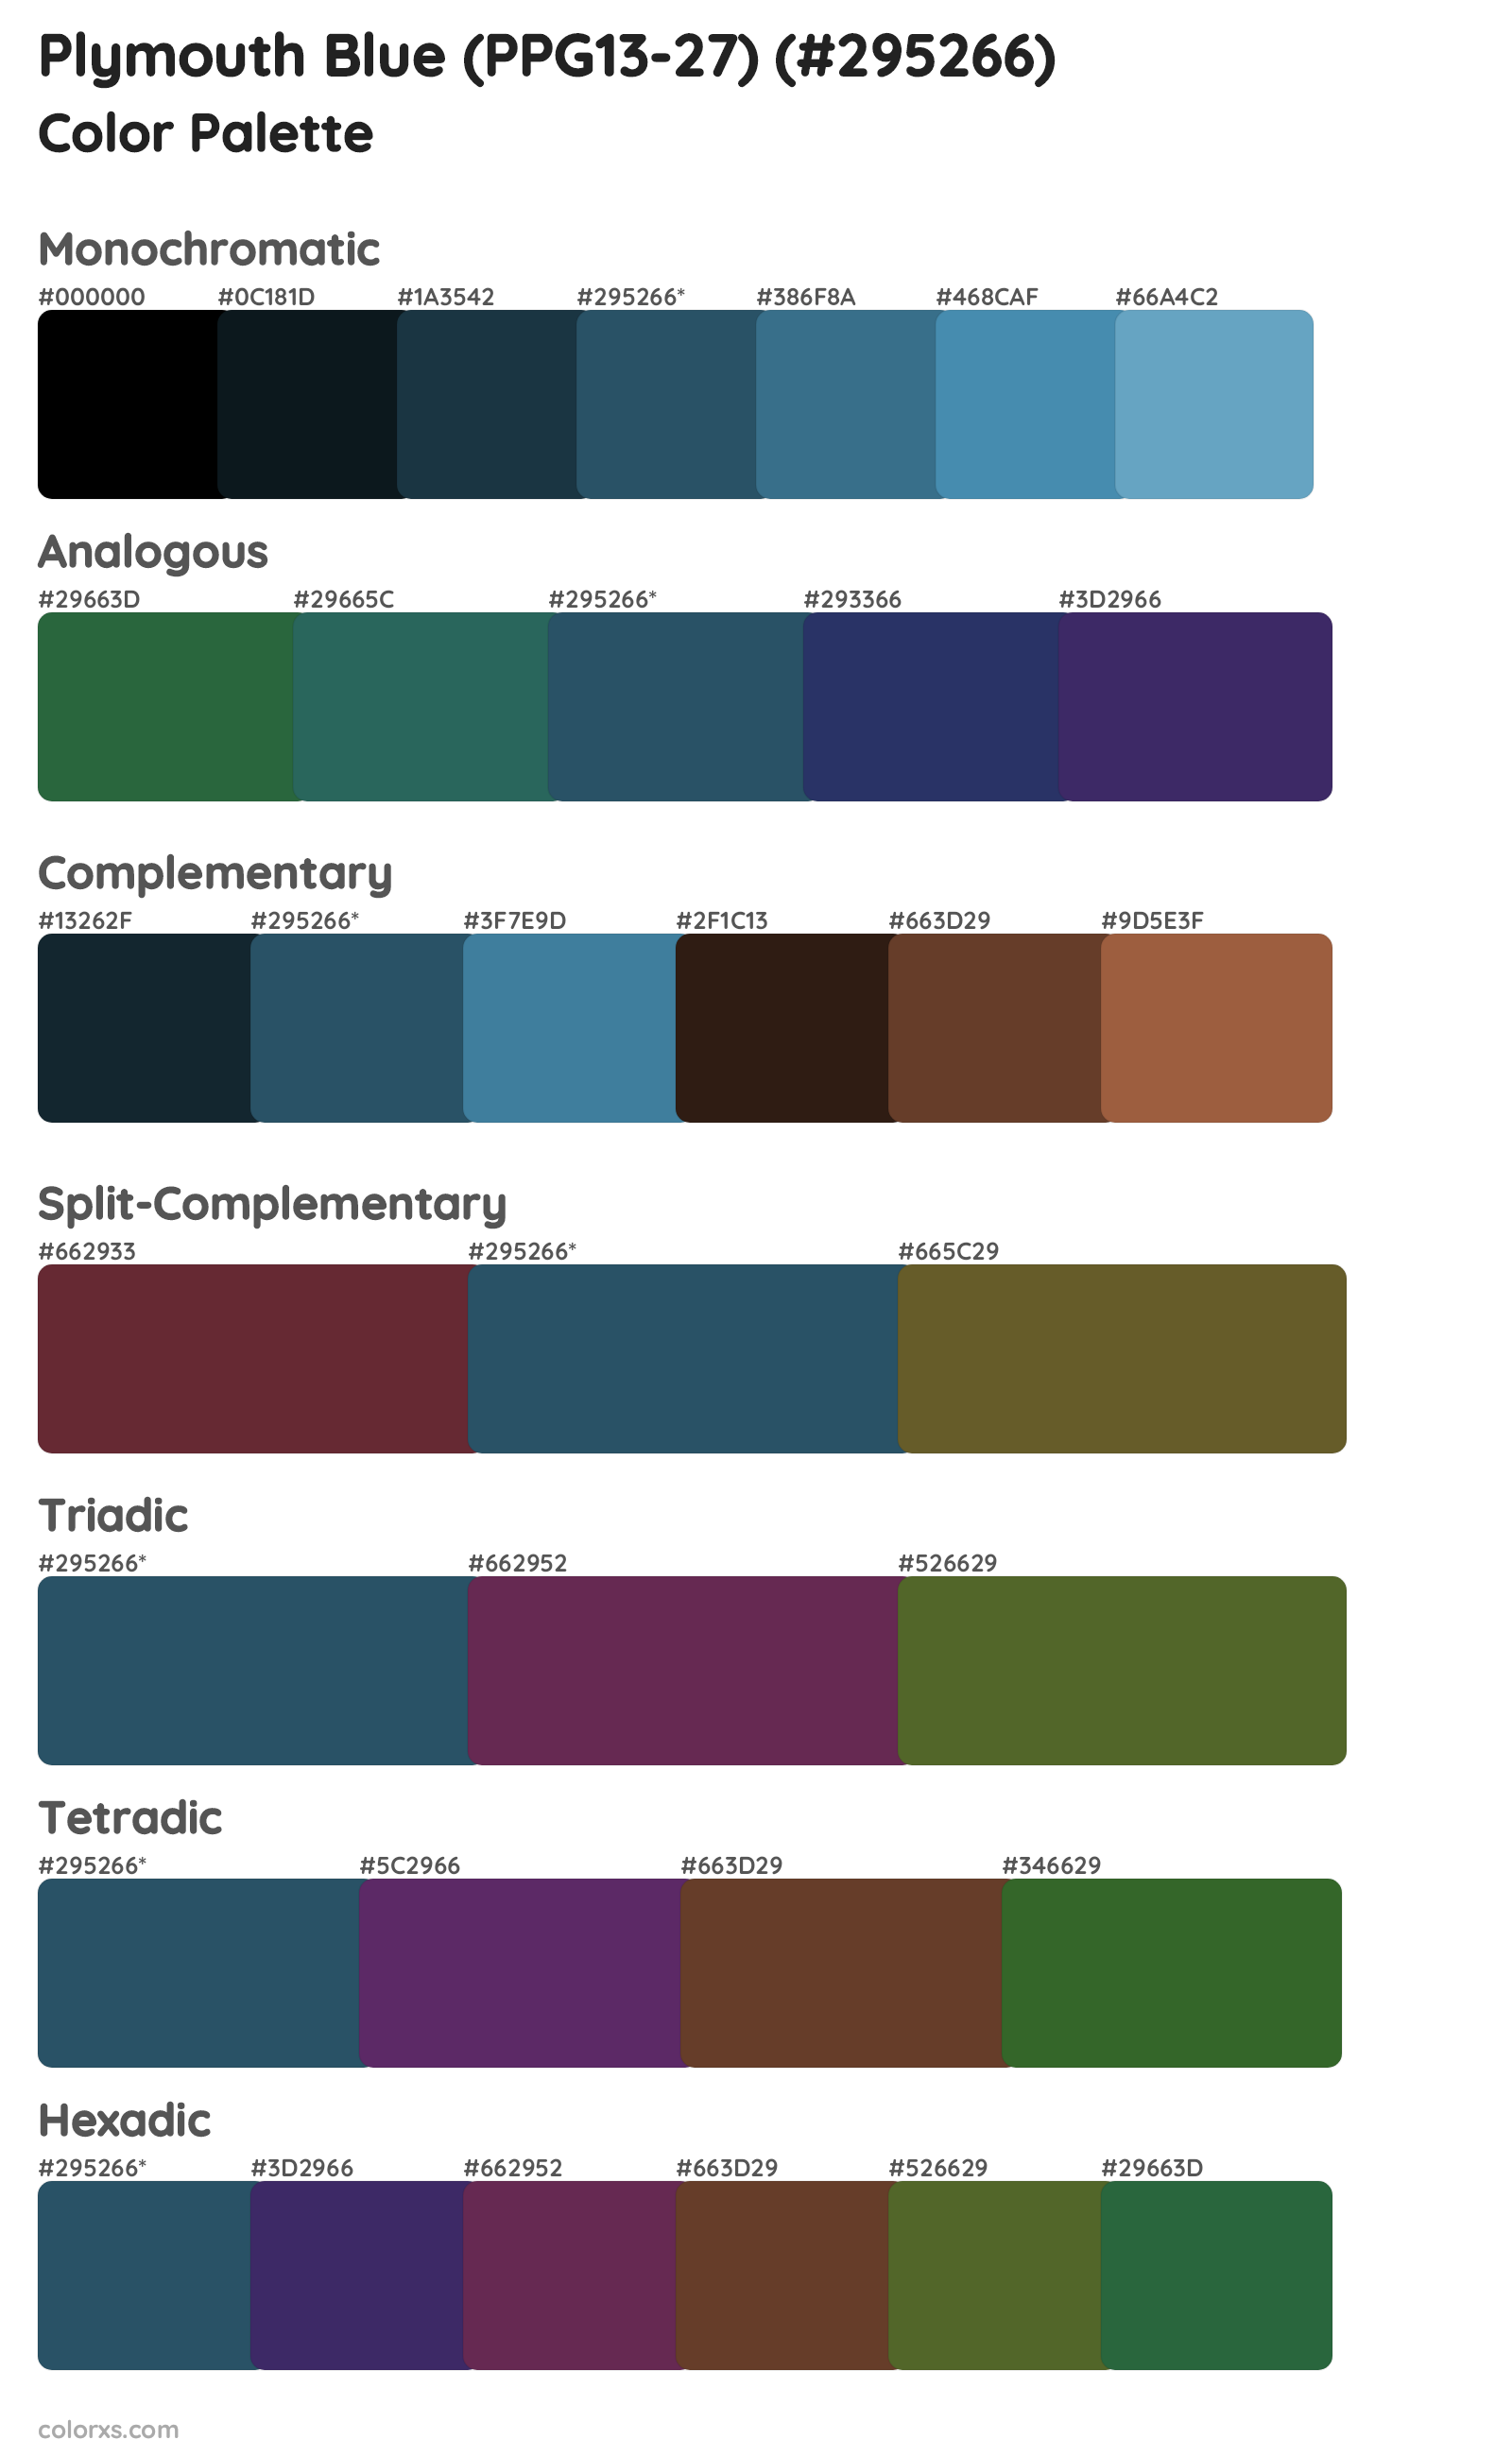 Plymouth Blue (PPG13-27) Color Scheme Palettes